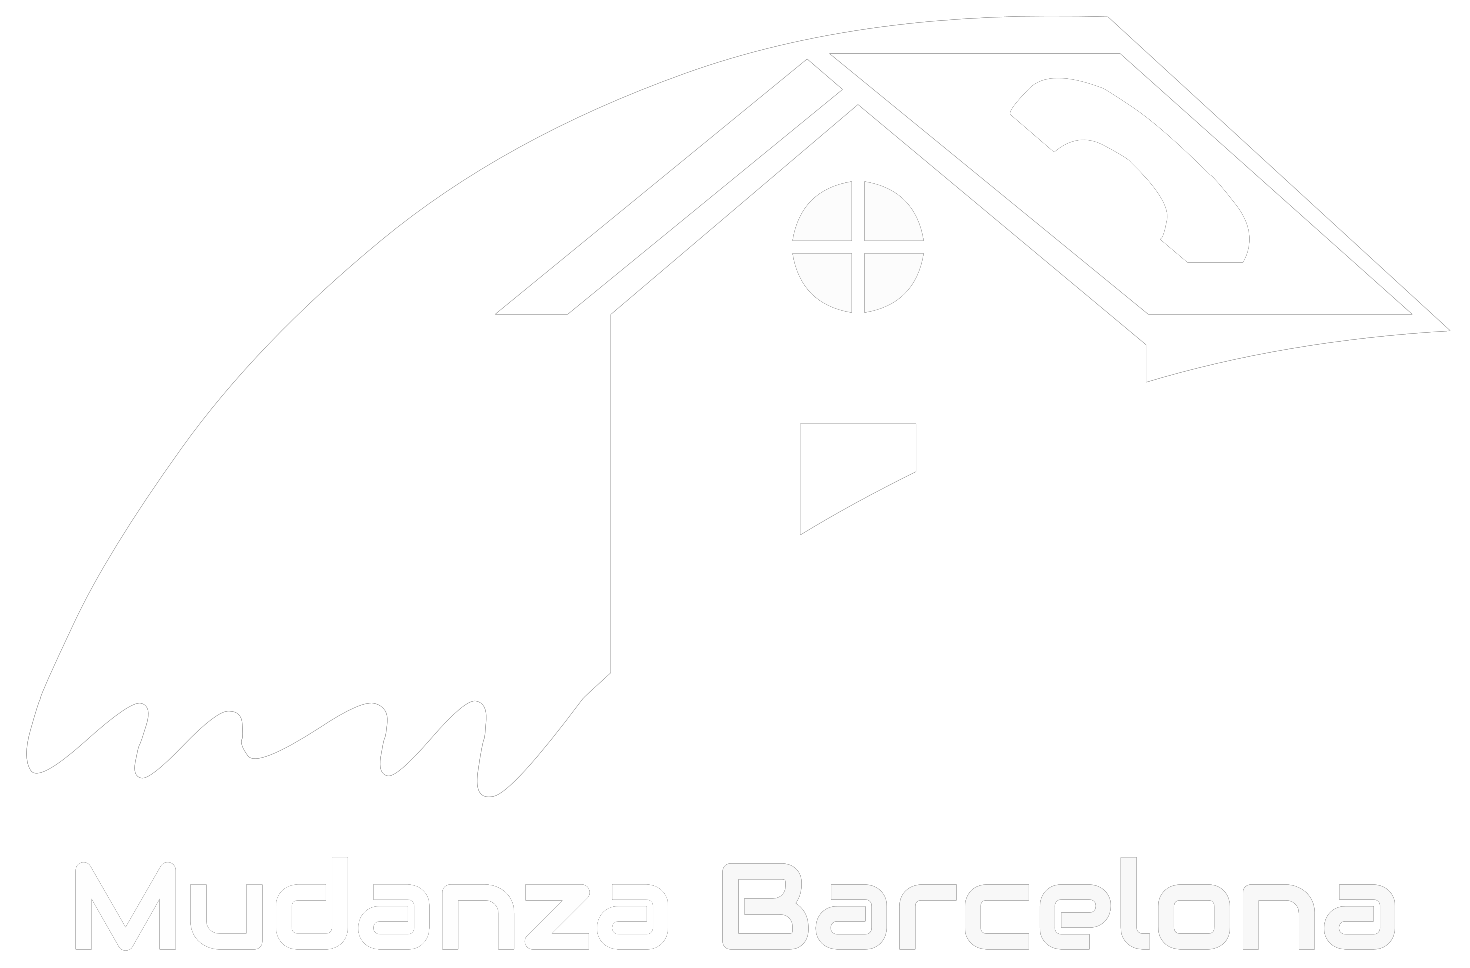 Mudanzas Barcelona